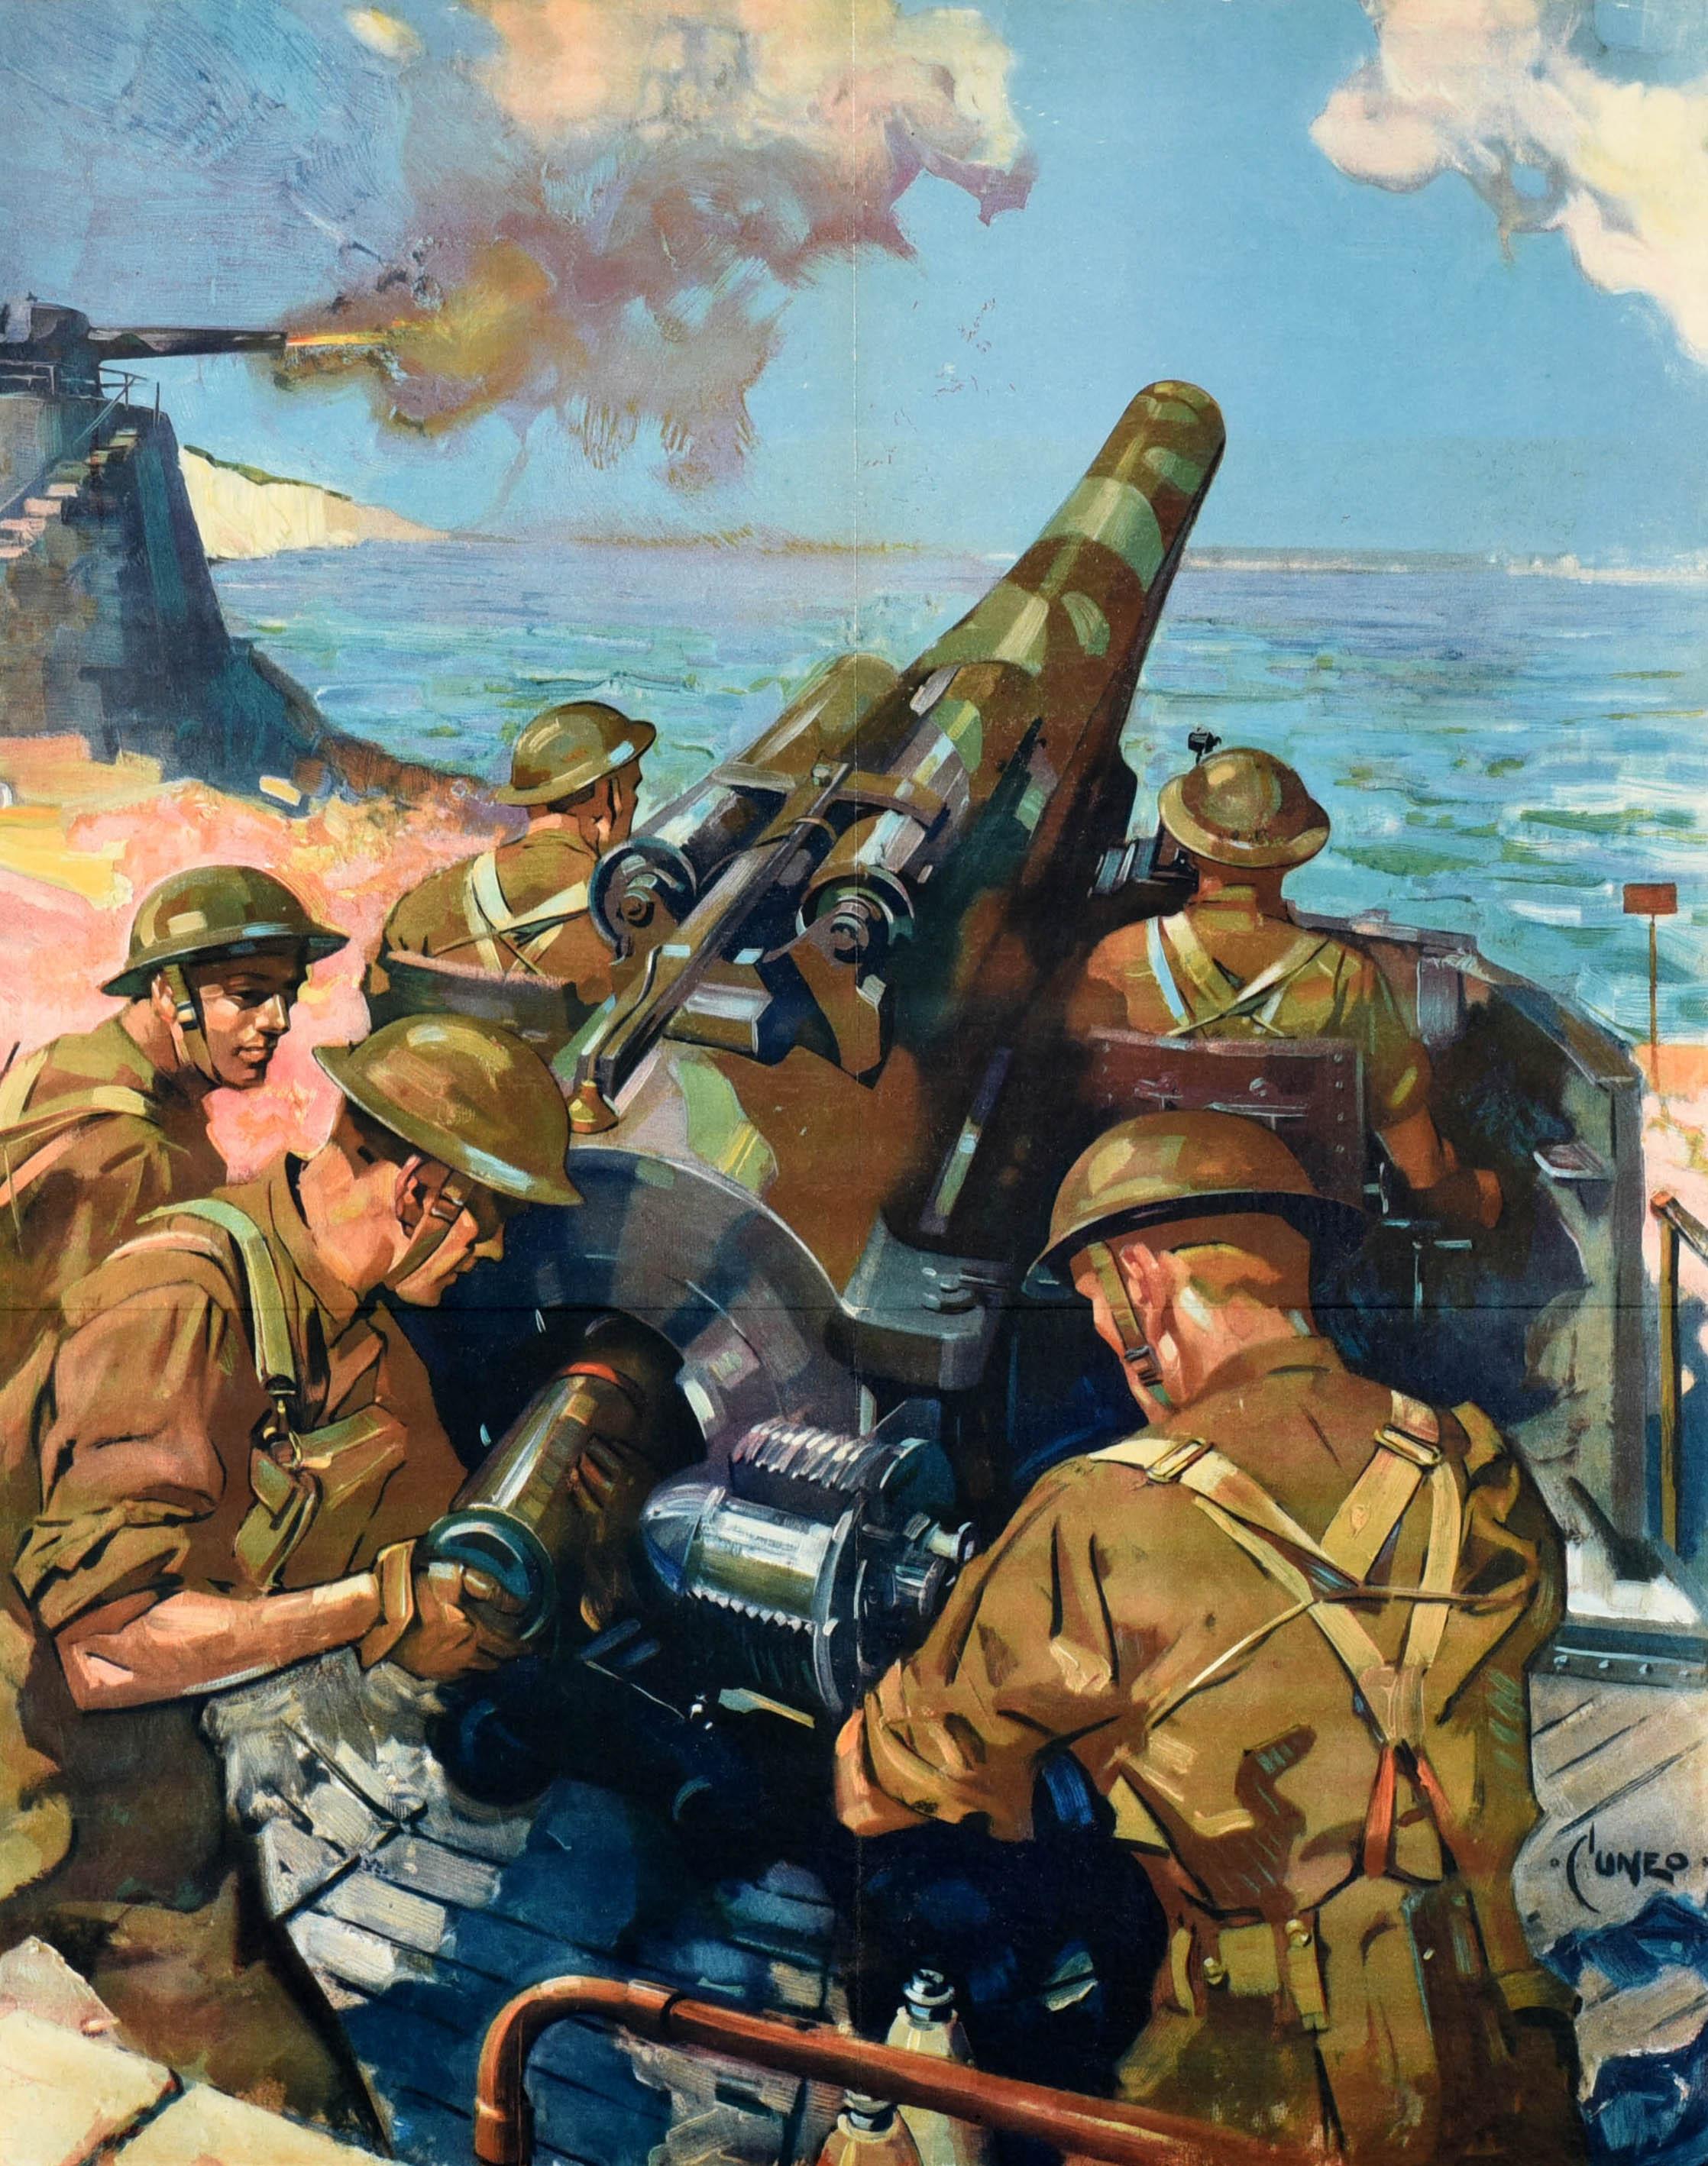 Originales Propagandaplakat aus dem Zweiten Weltkrieg - Help Britain Finish the Job! - mit einem dramatischen Kunstwerk des bekannten britischen Künstlers Terence Tenison Cuneo (1907-1996), das fünf Soldaten in Uniform zeigt, die eine Kanone vom